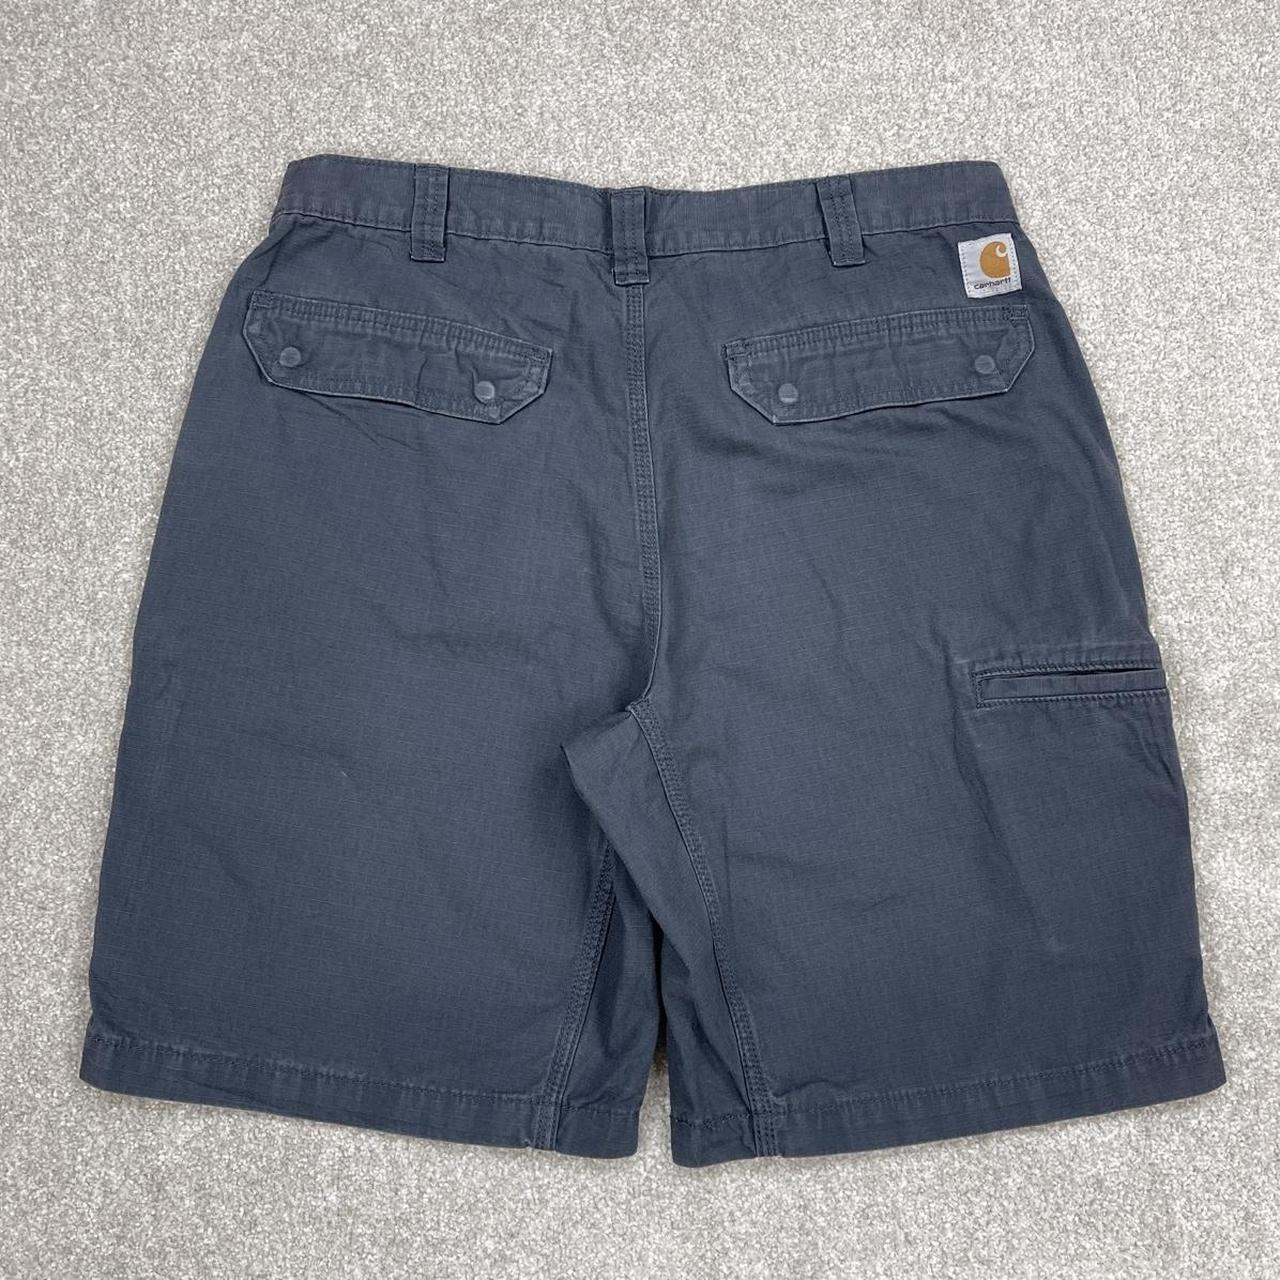 Carhartt shorts Steely Blue cargo shorts Loos summer... - Depop